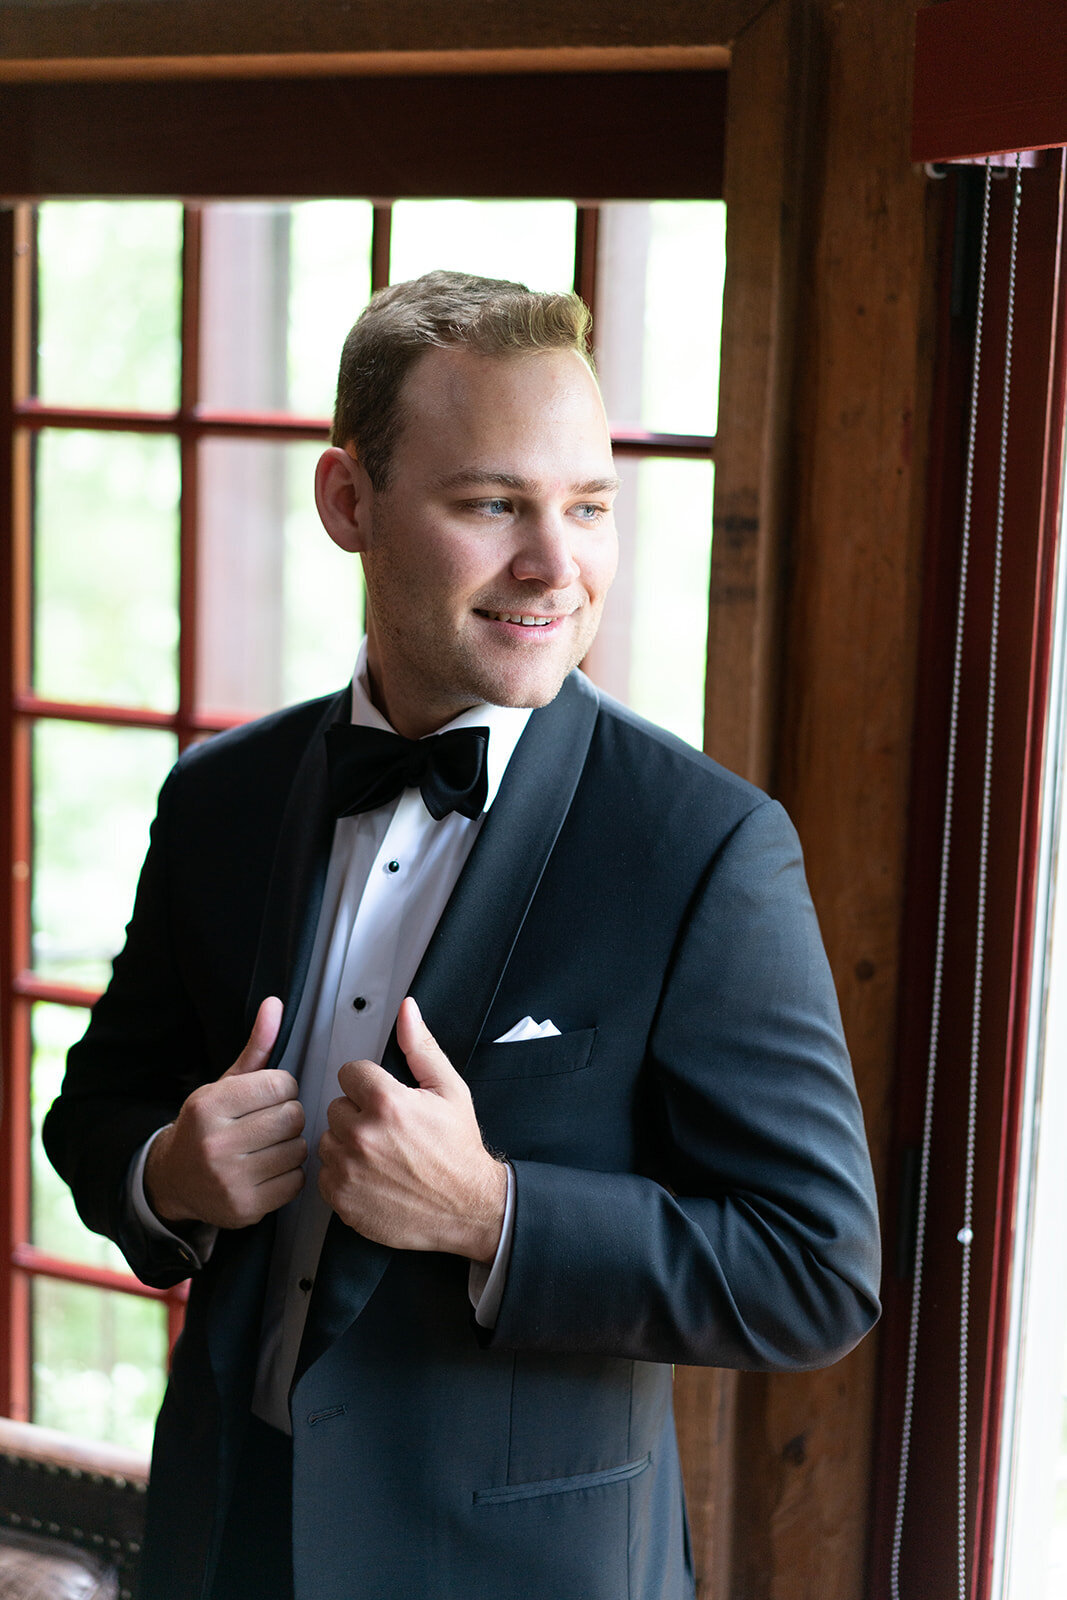 groom smiling while holding his tuxedo jacket